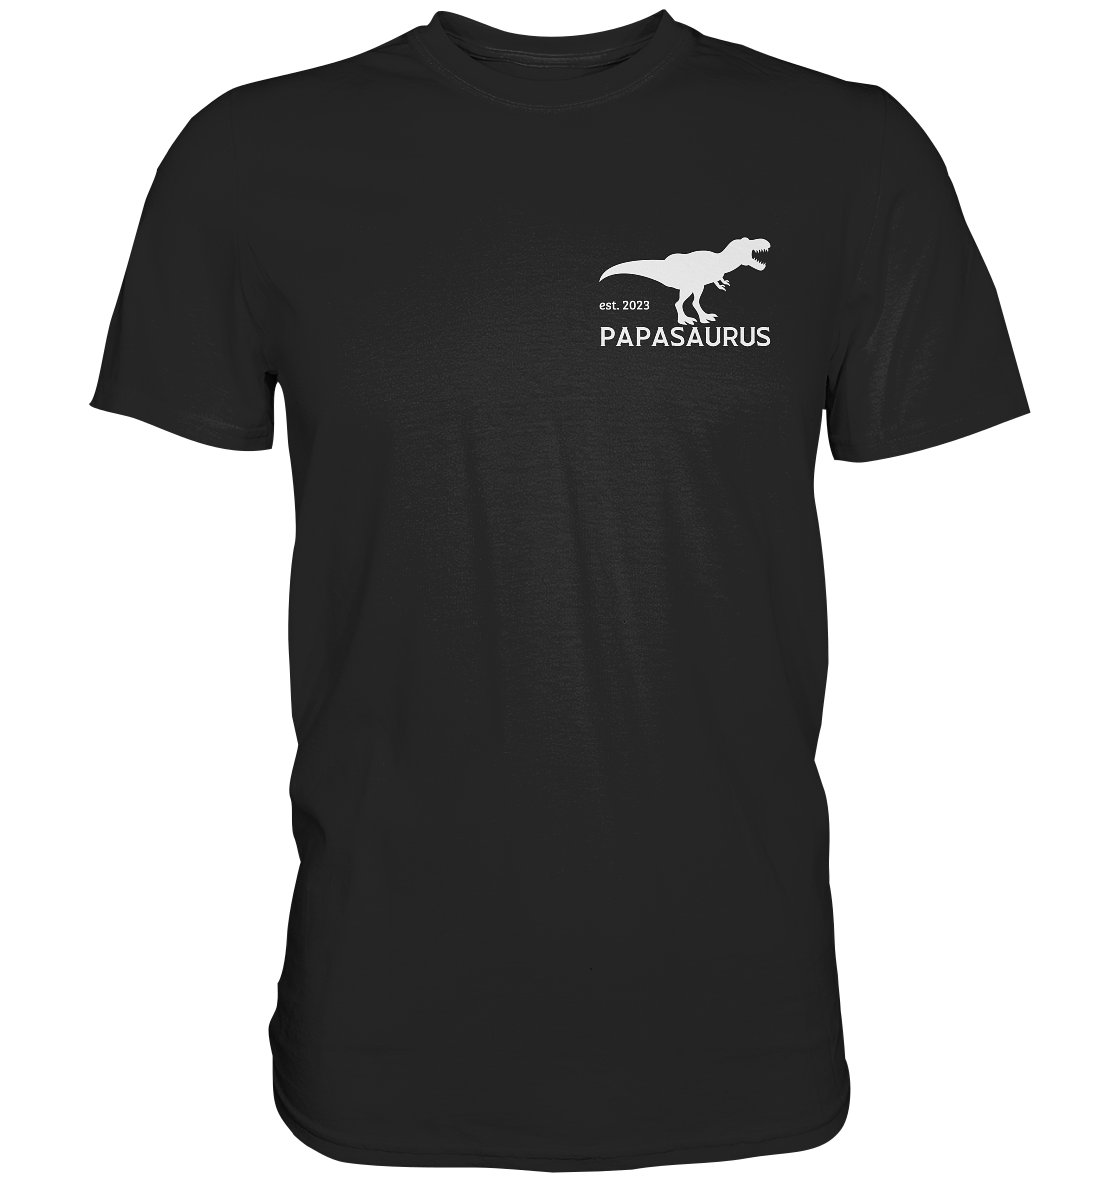 Ein Papa T-Shirt mit minimalistischem Design von ShirtDesire. Personalisierter Druck, hochwertige Materialien. Perfekt für stolze Väter, die ihren eigenen Stil ausdrücken möchten.